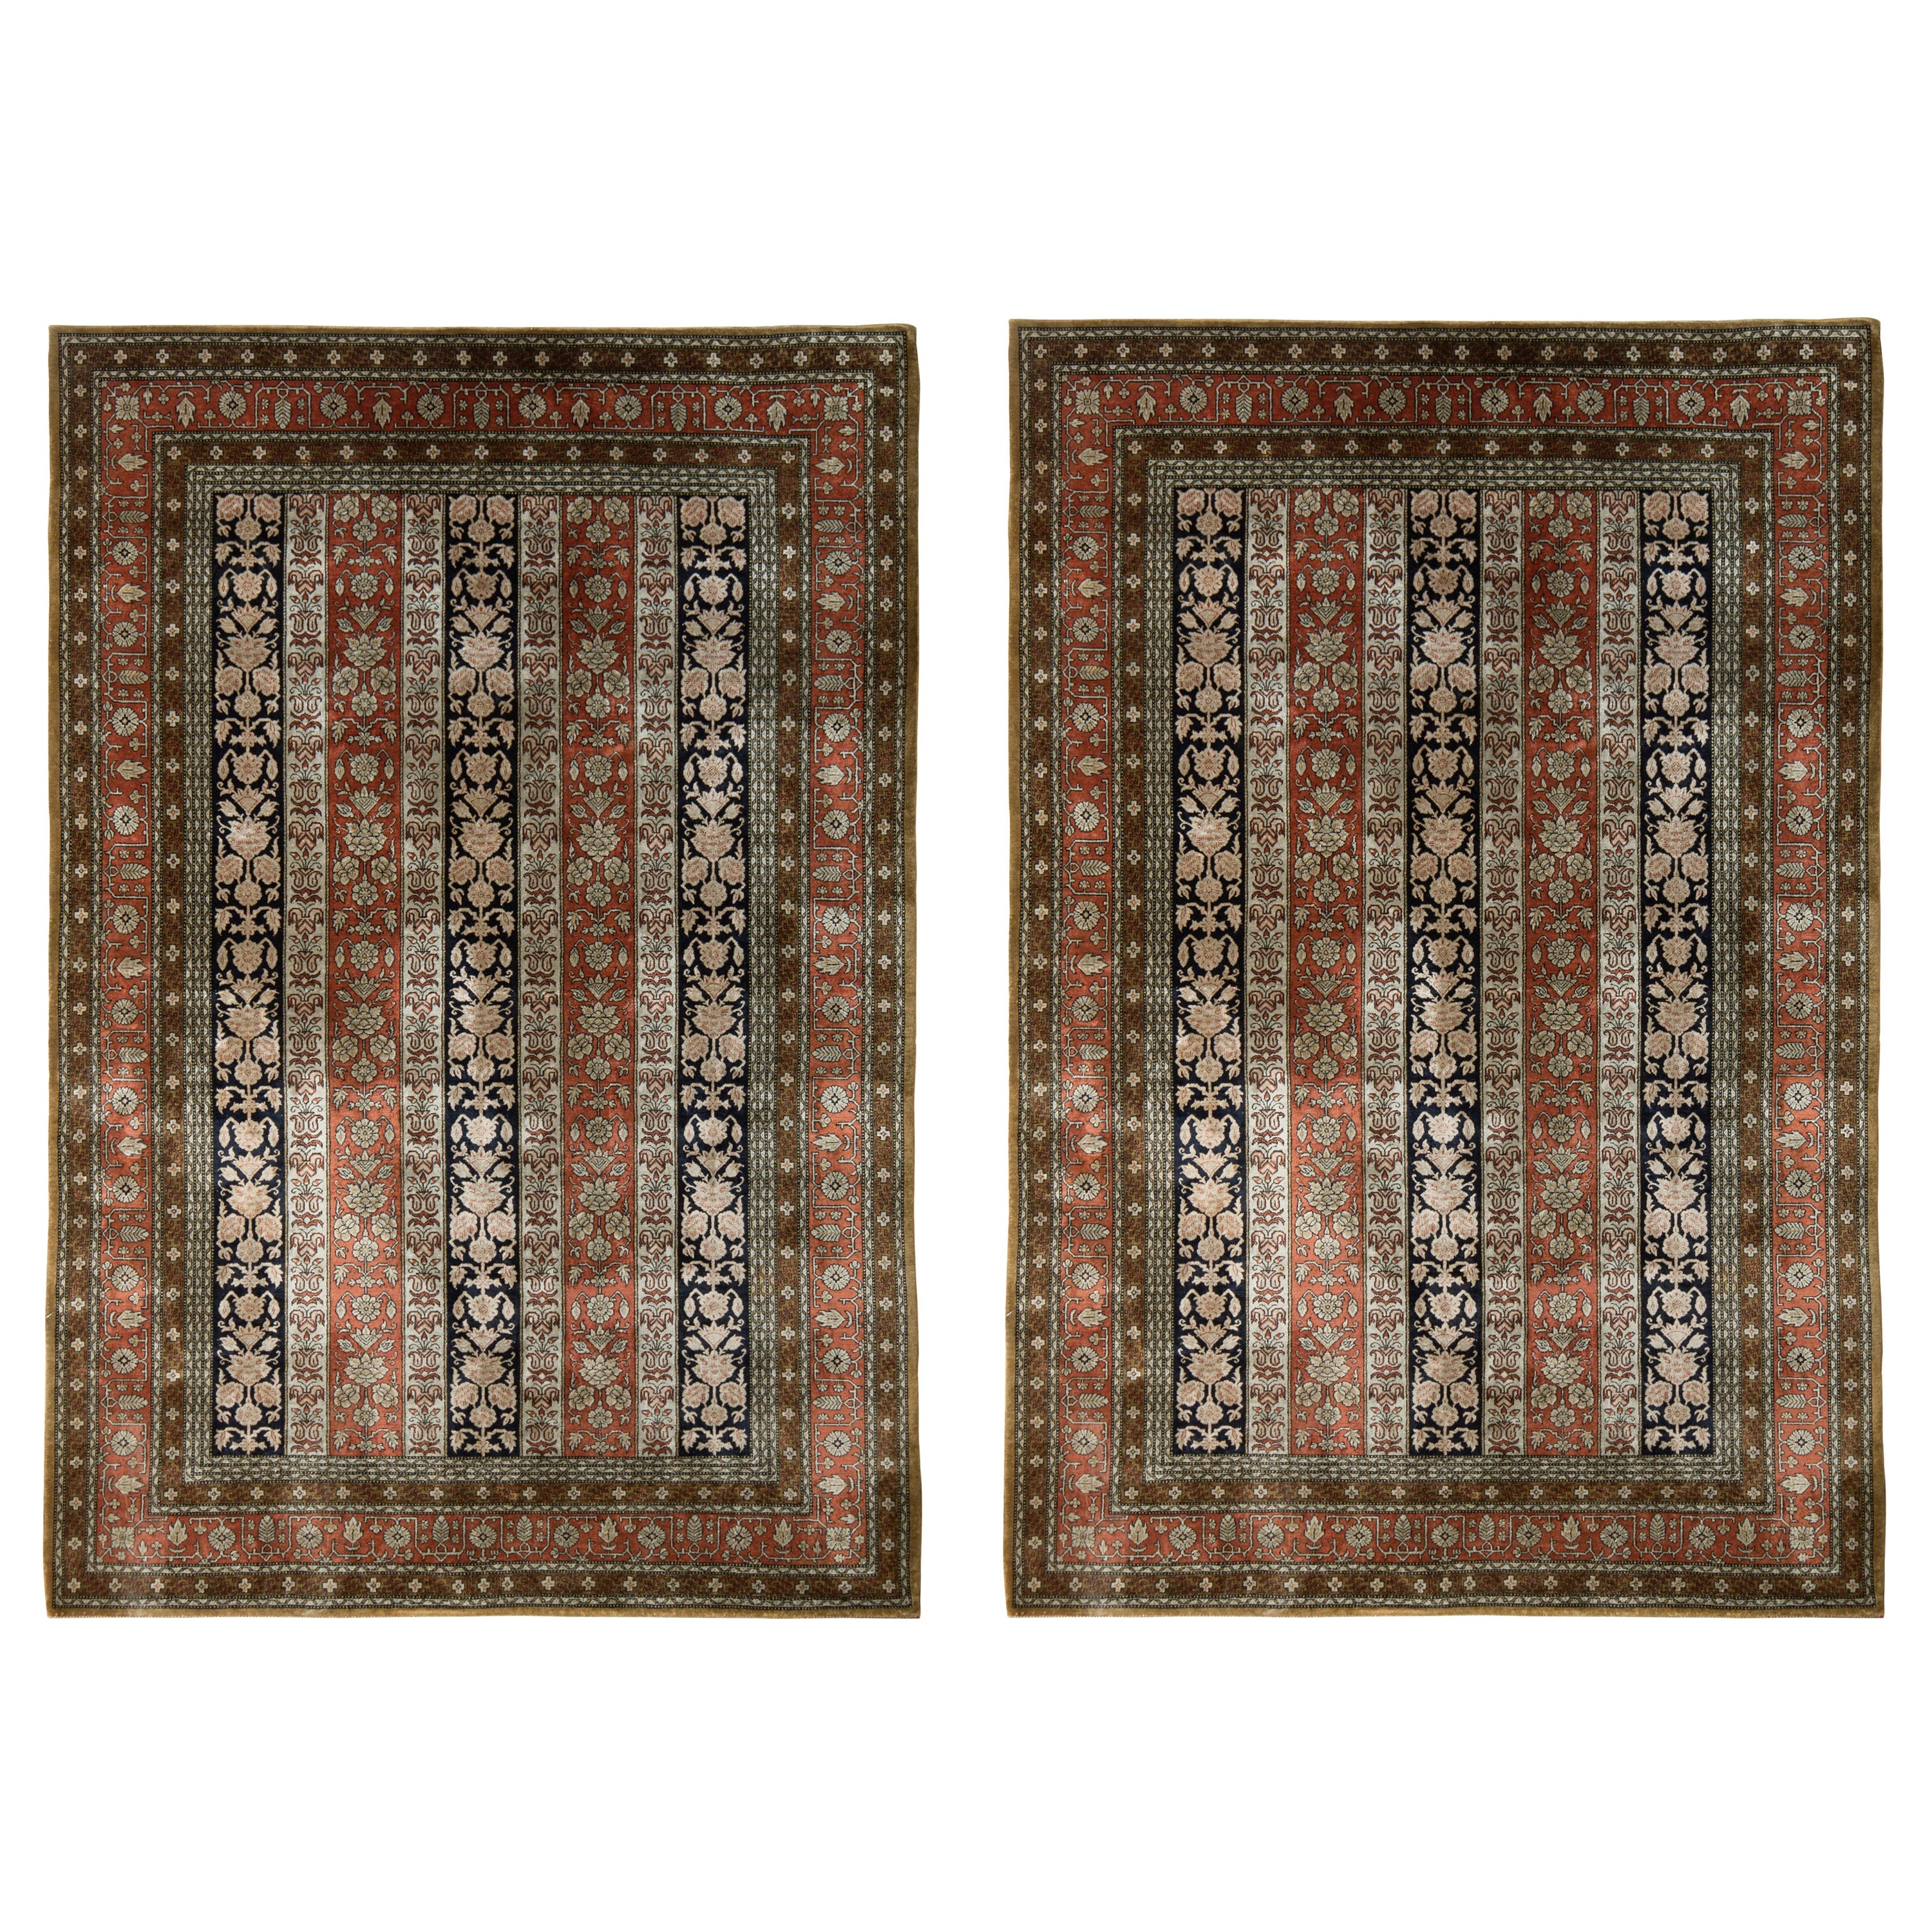 Vintage Persian Qum Rug Pair in Red & Beige-Brown Floral Pattern, by Rug & Kilim For Sale